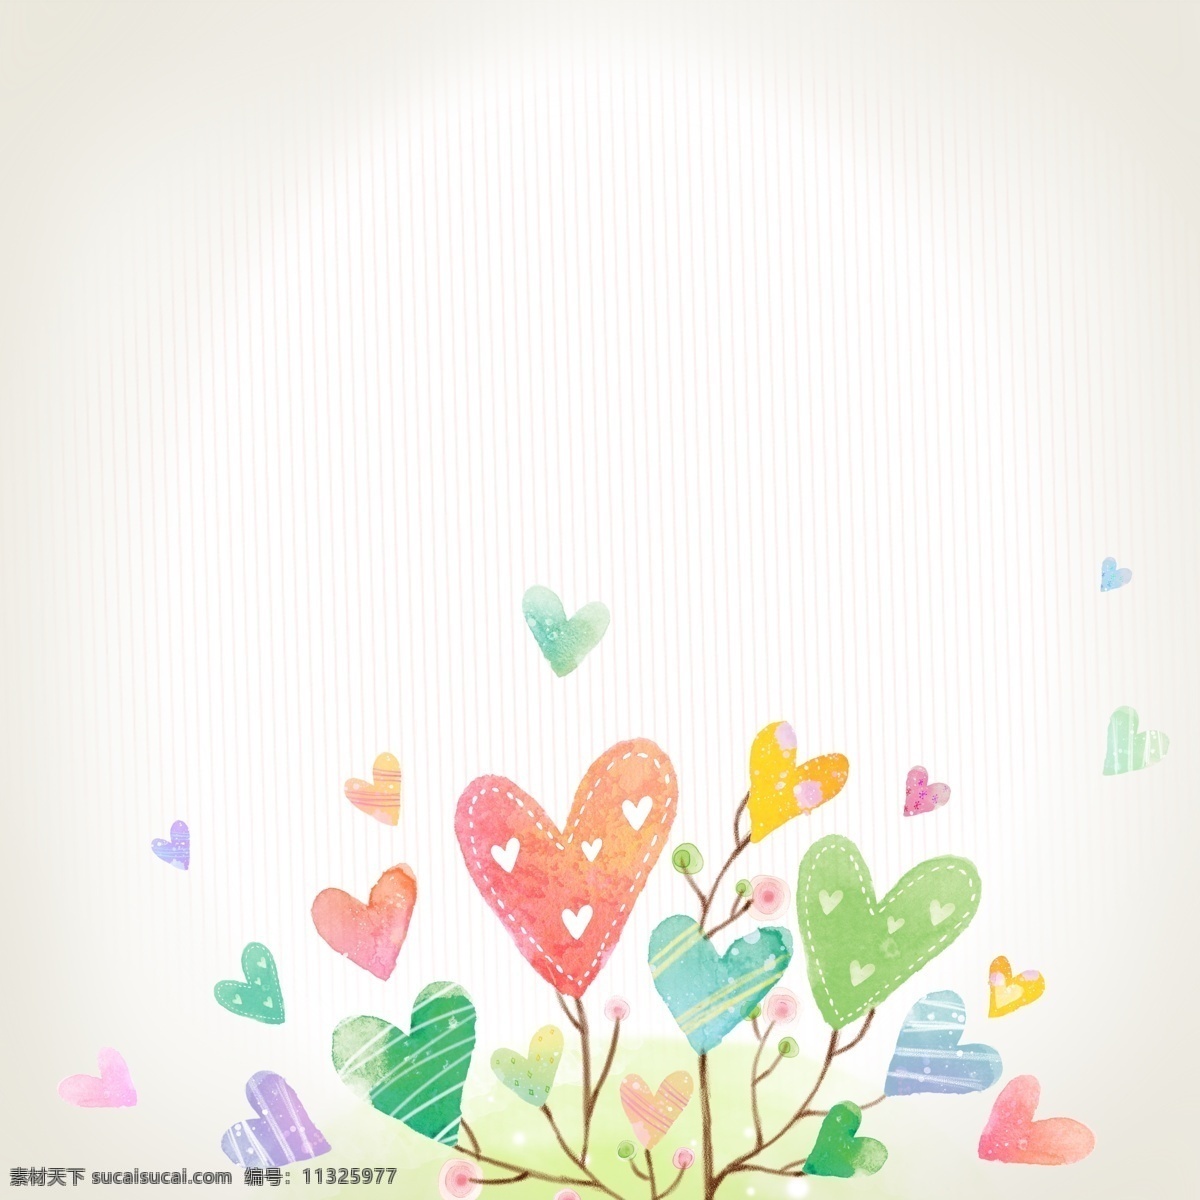 浪漫心形树 可爱素材 韩国素材 心形 心 卡通素材 底纹边框 背景底纹